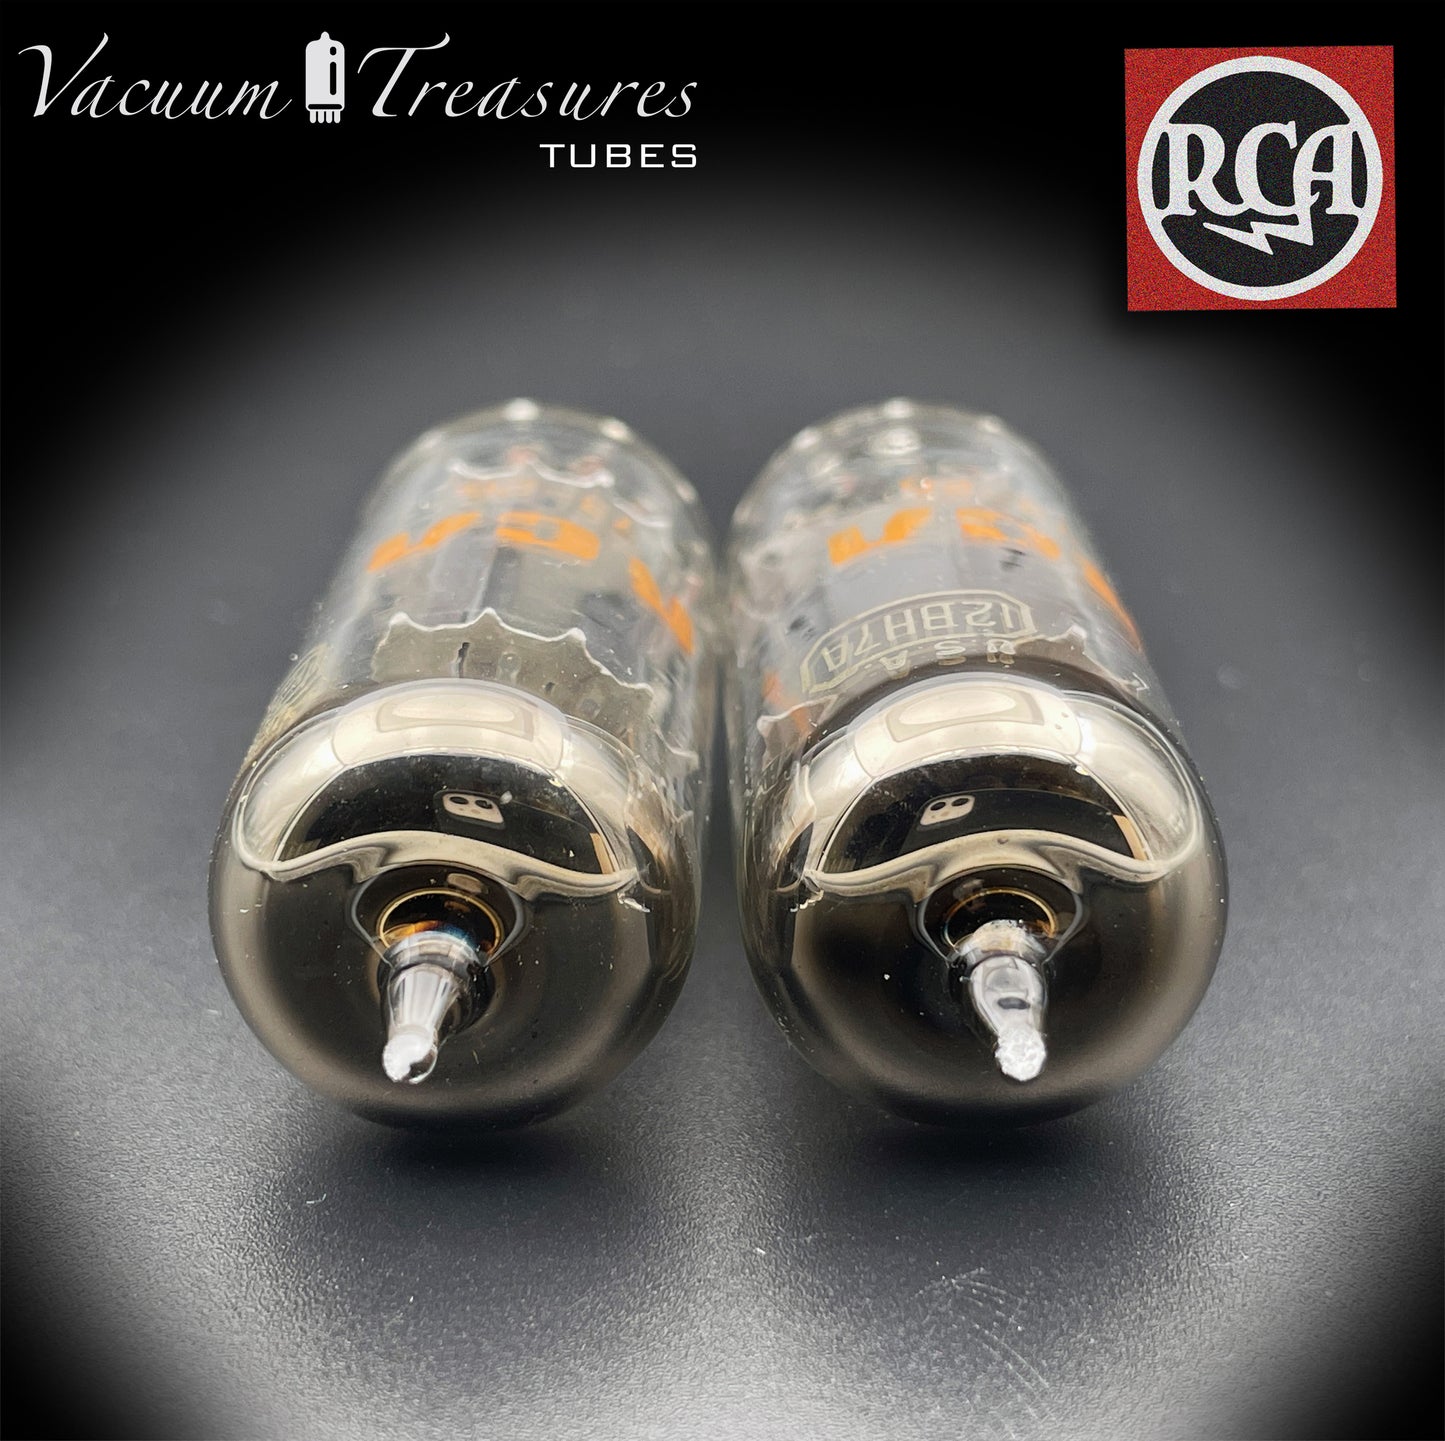 12BH7 A RCA plaques grises O Getter paires de tubes assortis fabriqués aux États-Unis '73